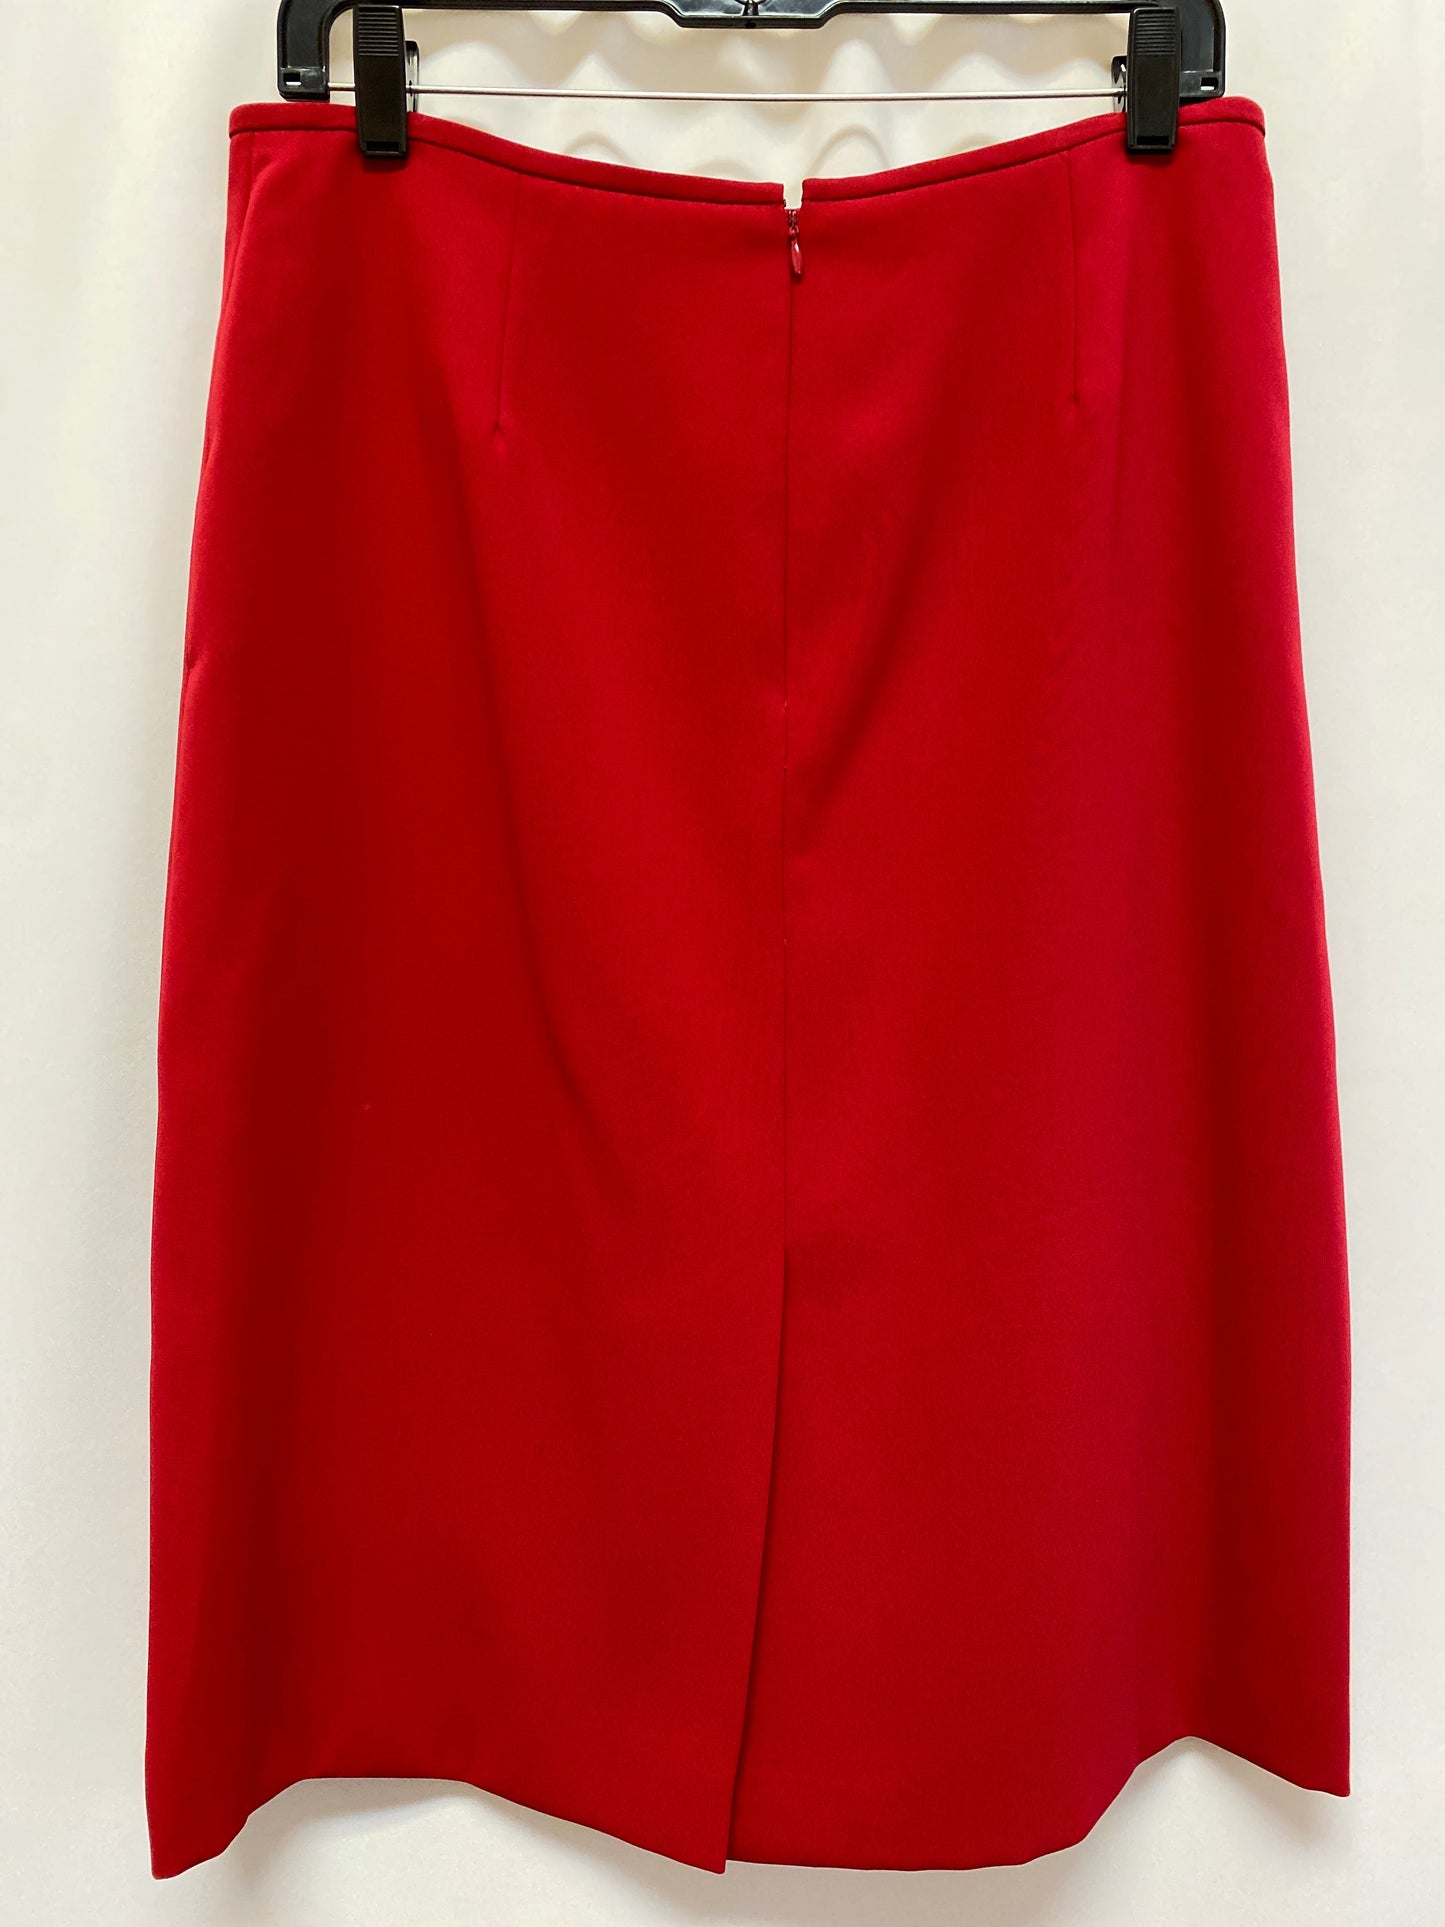 Skirt Suit 2pc By Liz Claiborne  Size: 10